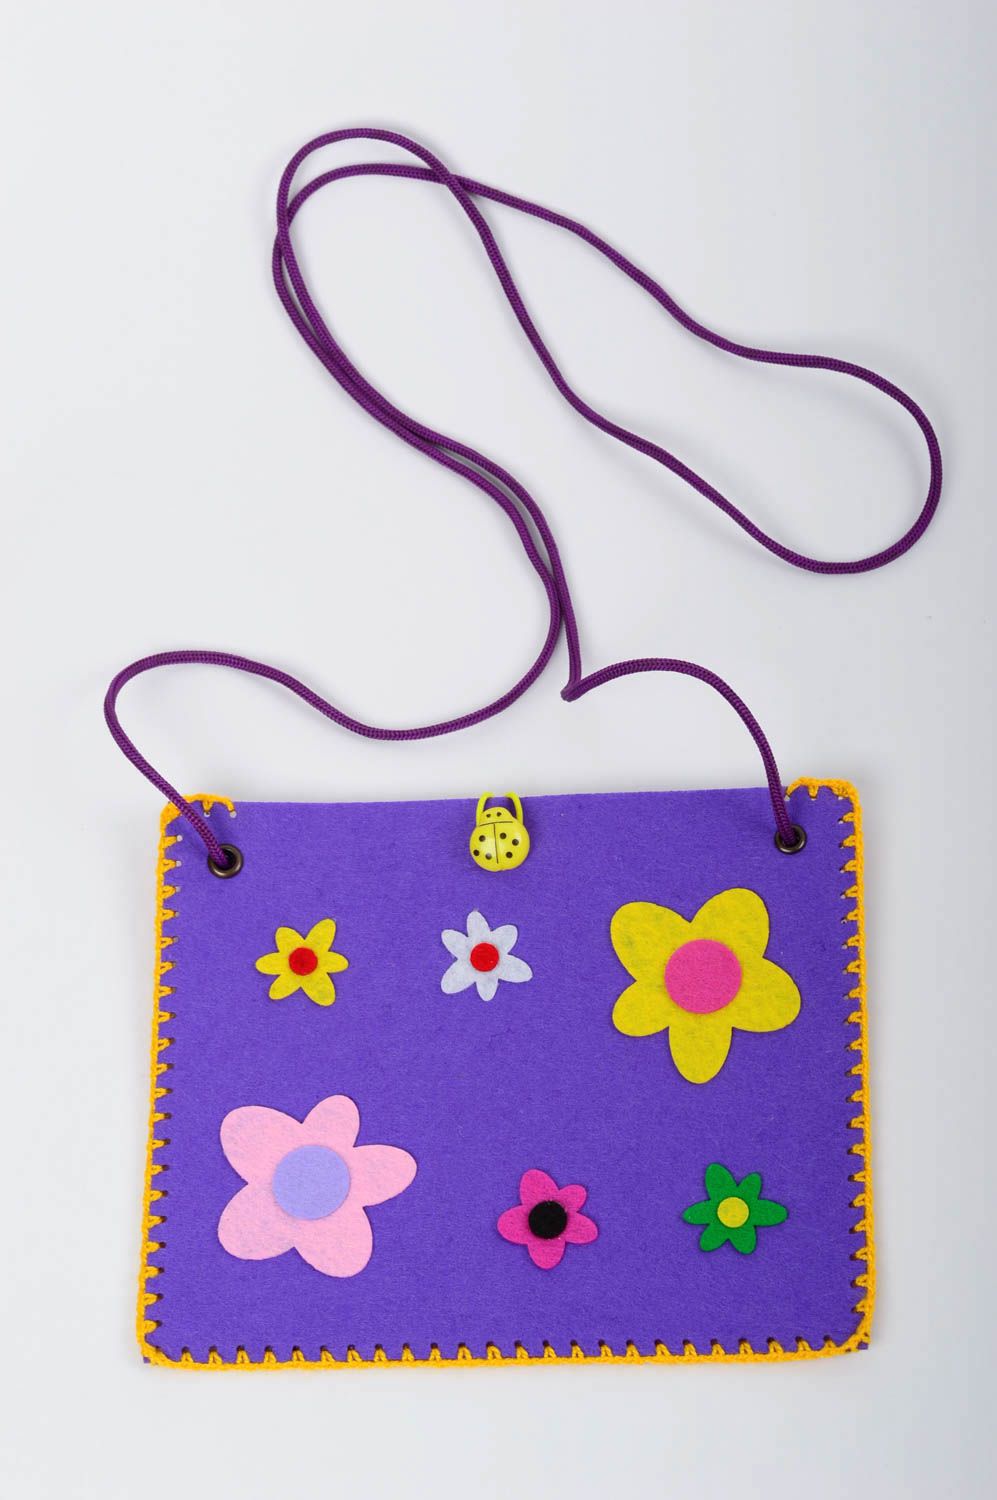 Сумка ручной работы сумка из фетра фиолетовая сумка для детей с цветочками фото 1